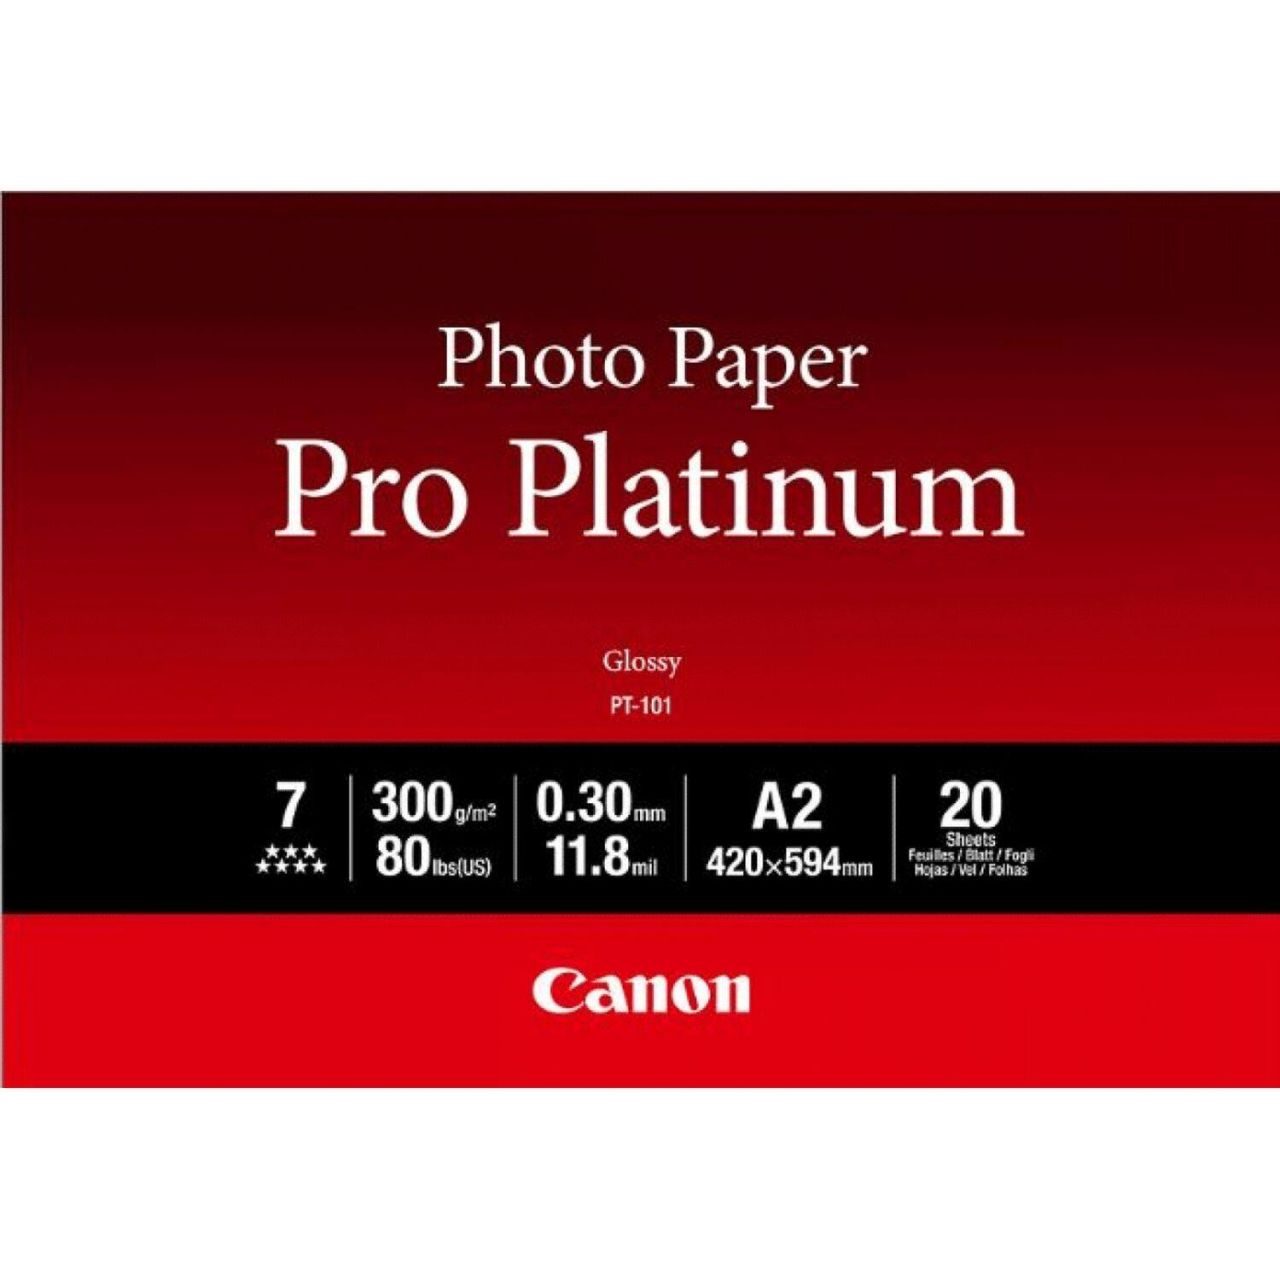 Canon PT-101 Pro Platinum Fotopapier glänzend A2 420x594mm 300g/m² - 20 Blatt